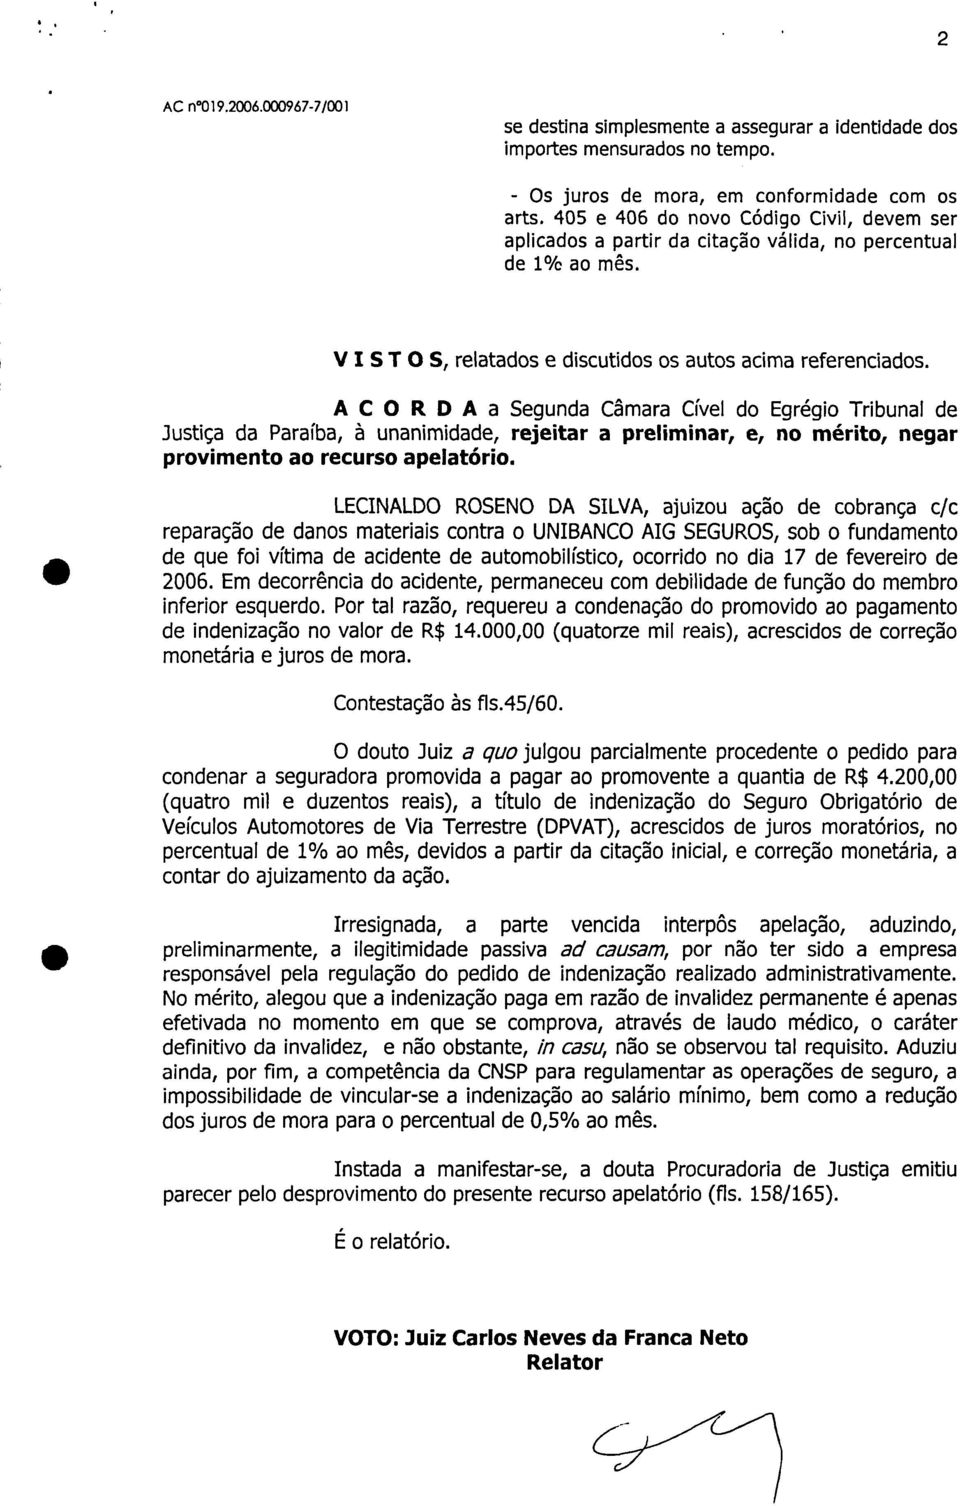 ACORDA a Segunda Câmara Cível do Egrégio Tribunal de Justiça da Paraíba, à unanimidade, rejeitar a preliminar, e, no mérito, negar provimento ao recurso apelatório.